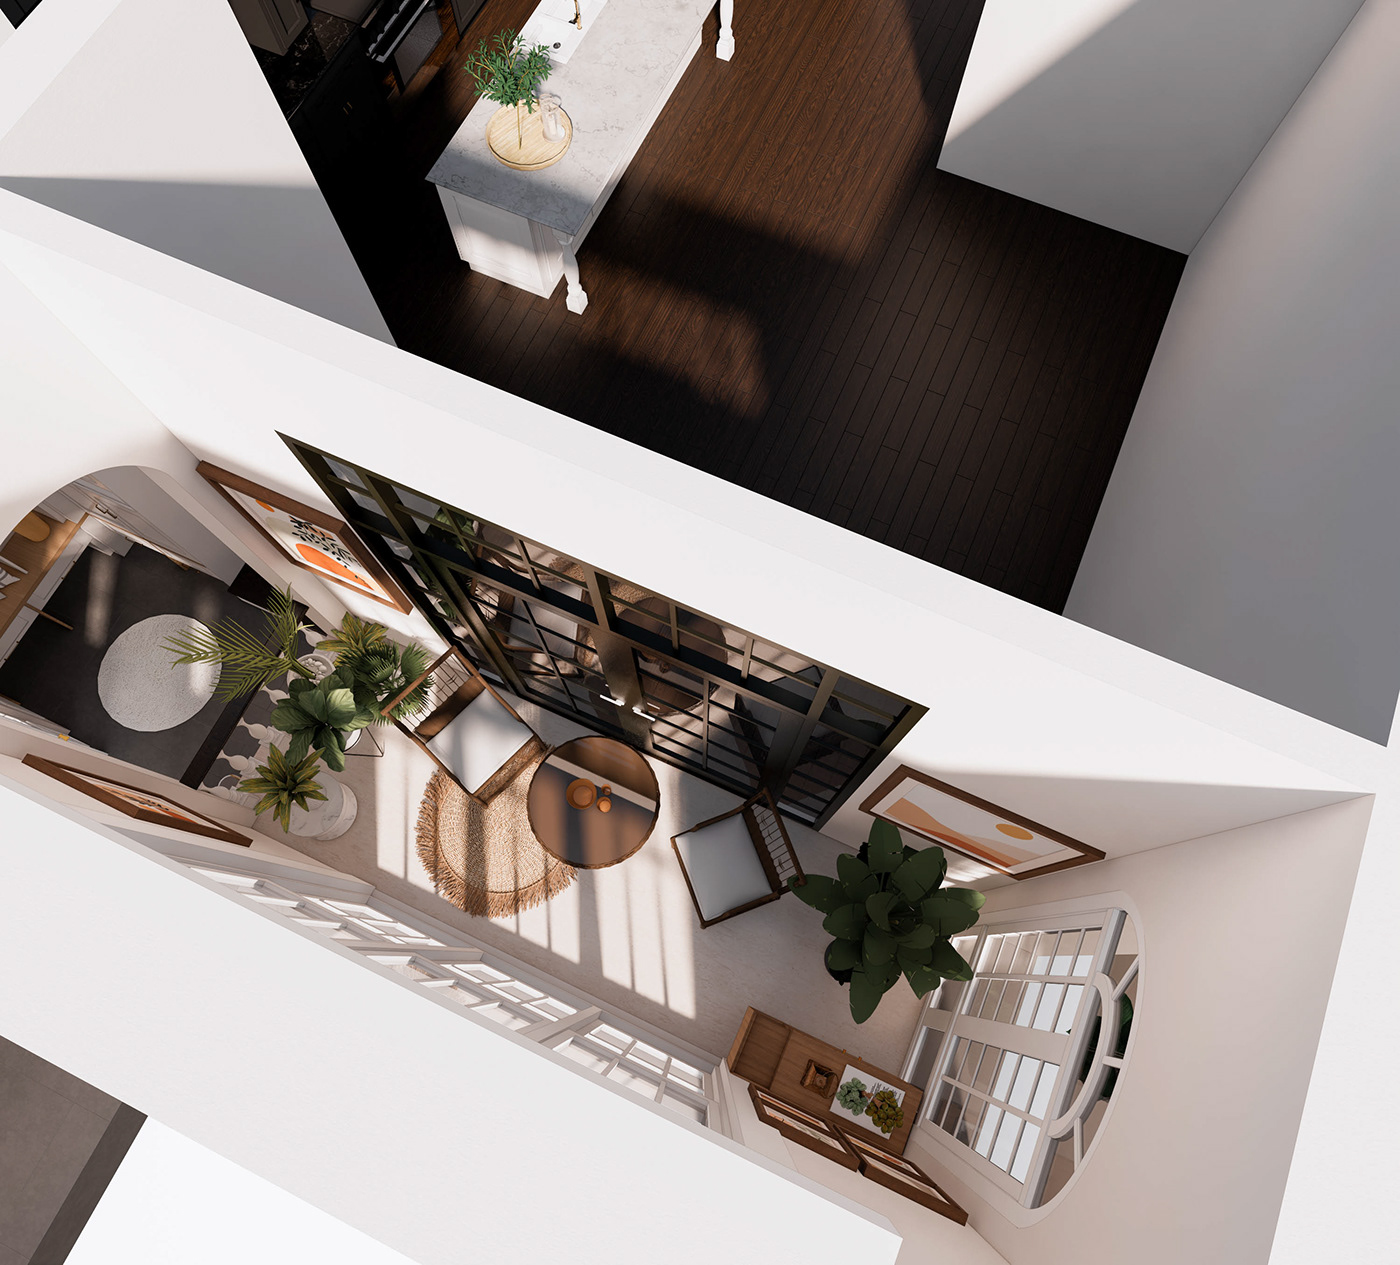 3D 3ds max architecture archviz exterior interior design  modern Render visualization vray